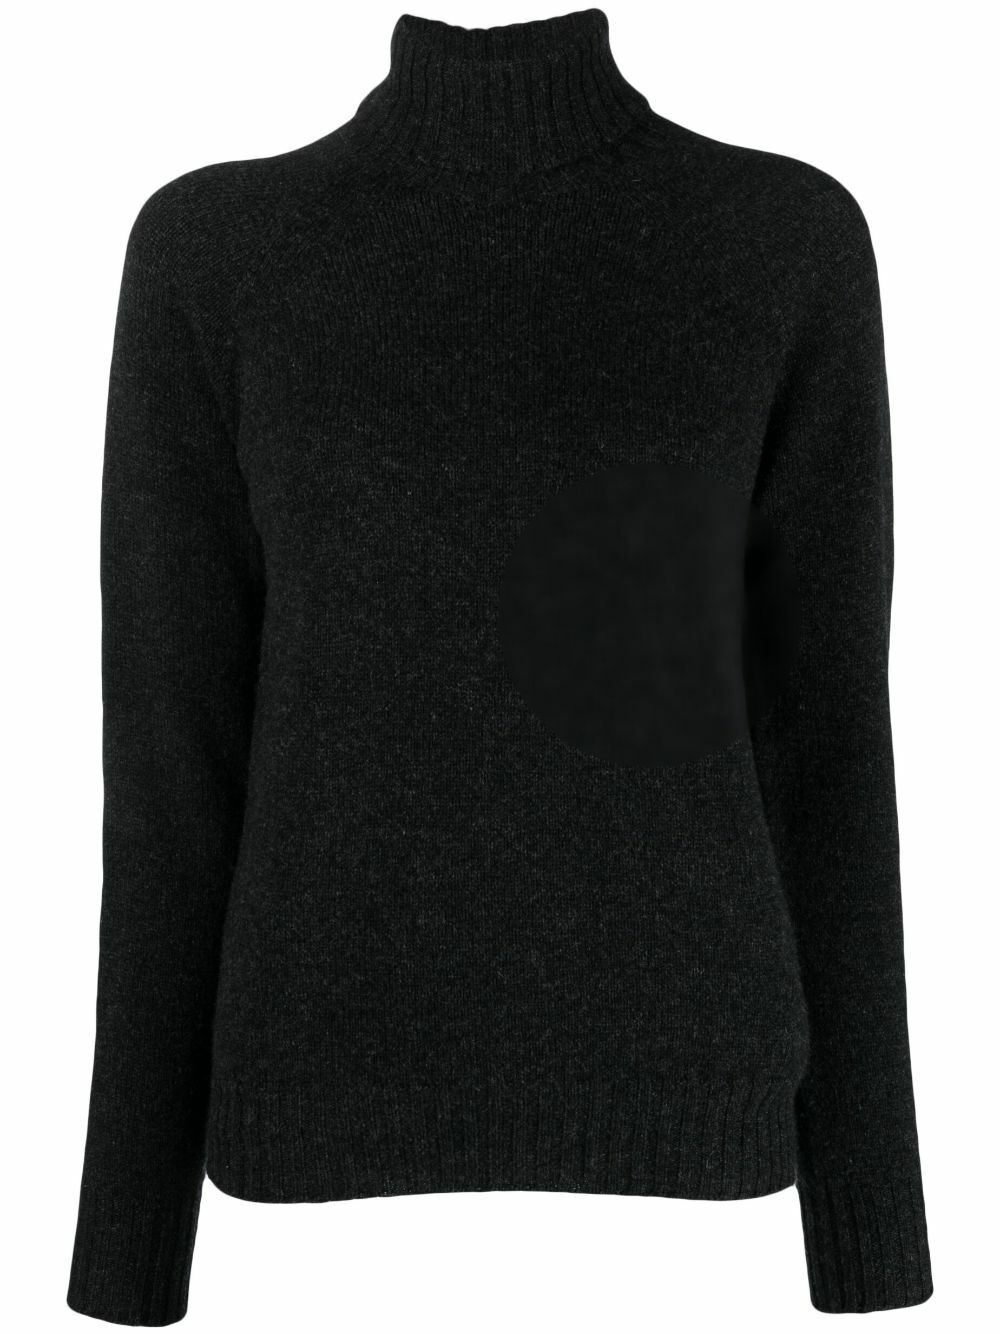 DRUMOHR - Wool Sweater